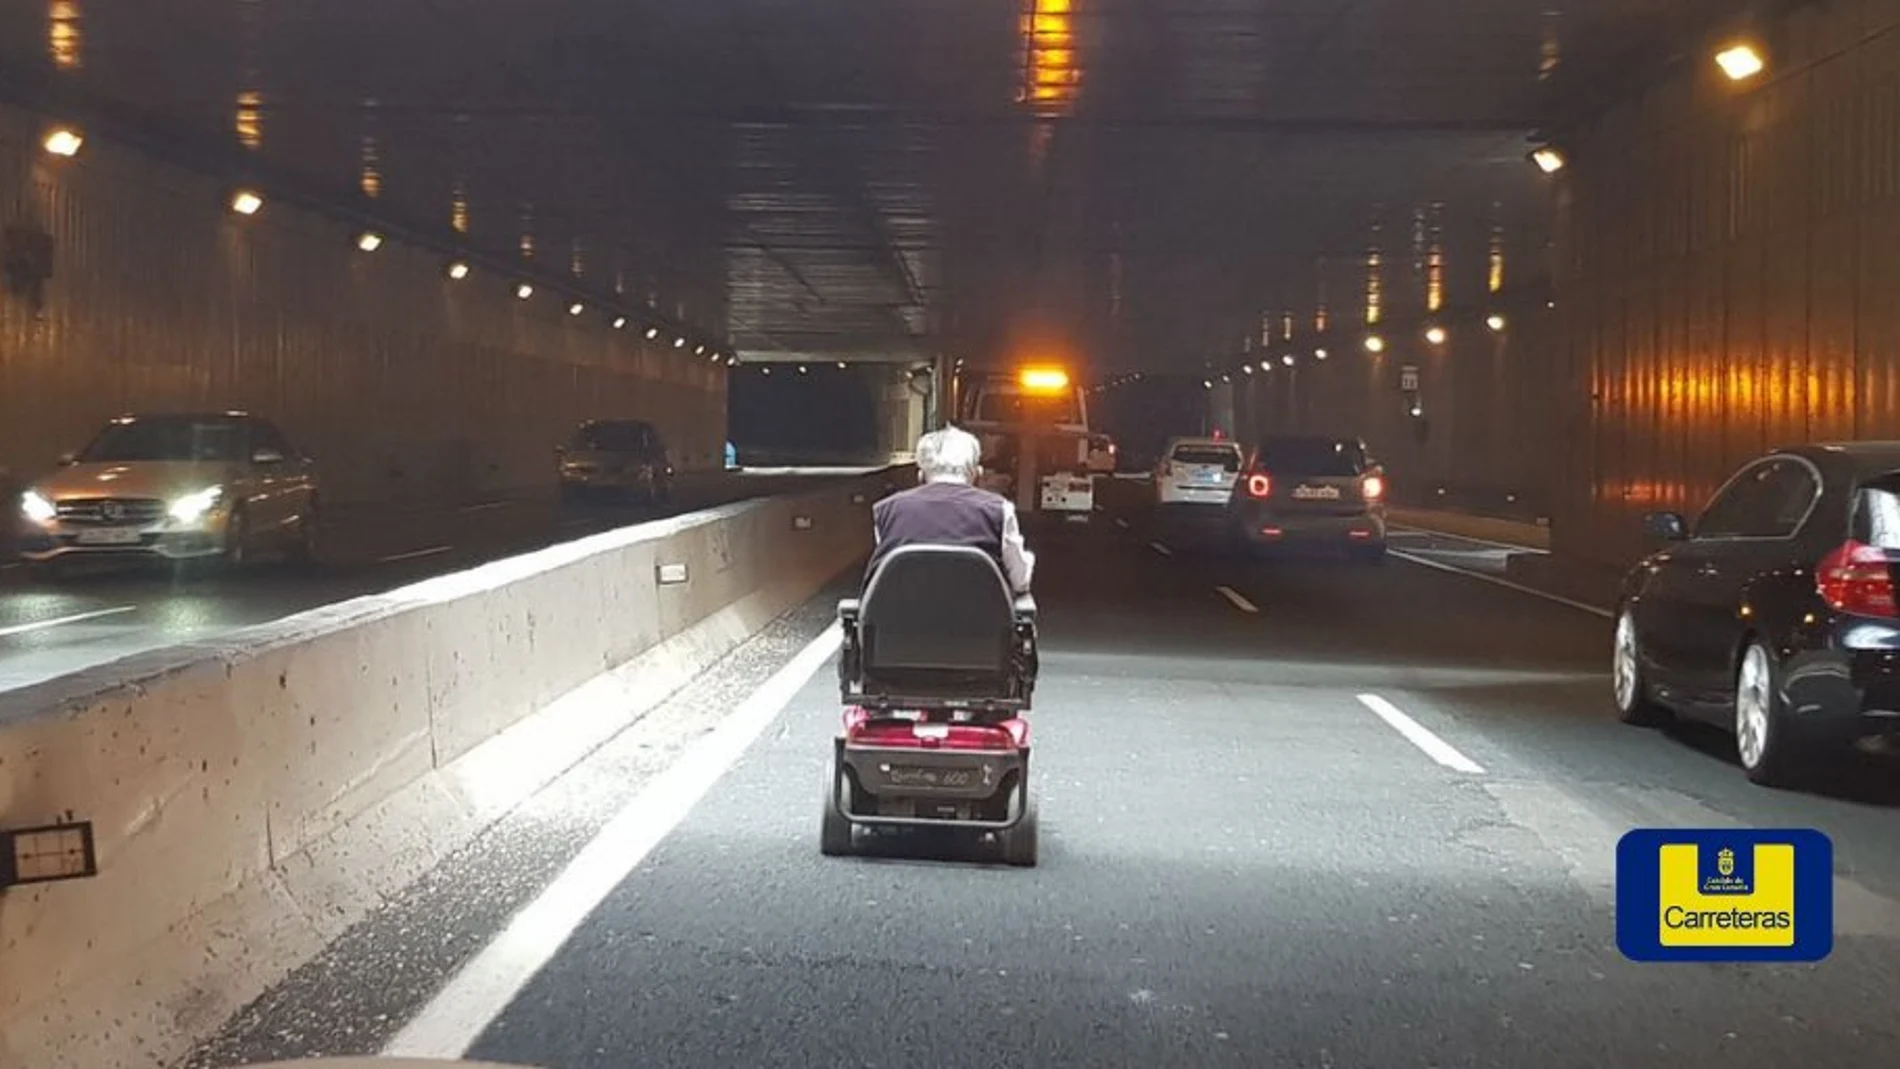 El hombre en silla de ruedas circulando por el interior del túnel de Julio Luengo